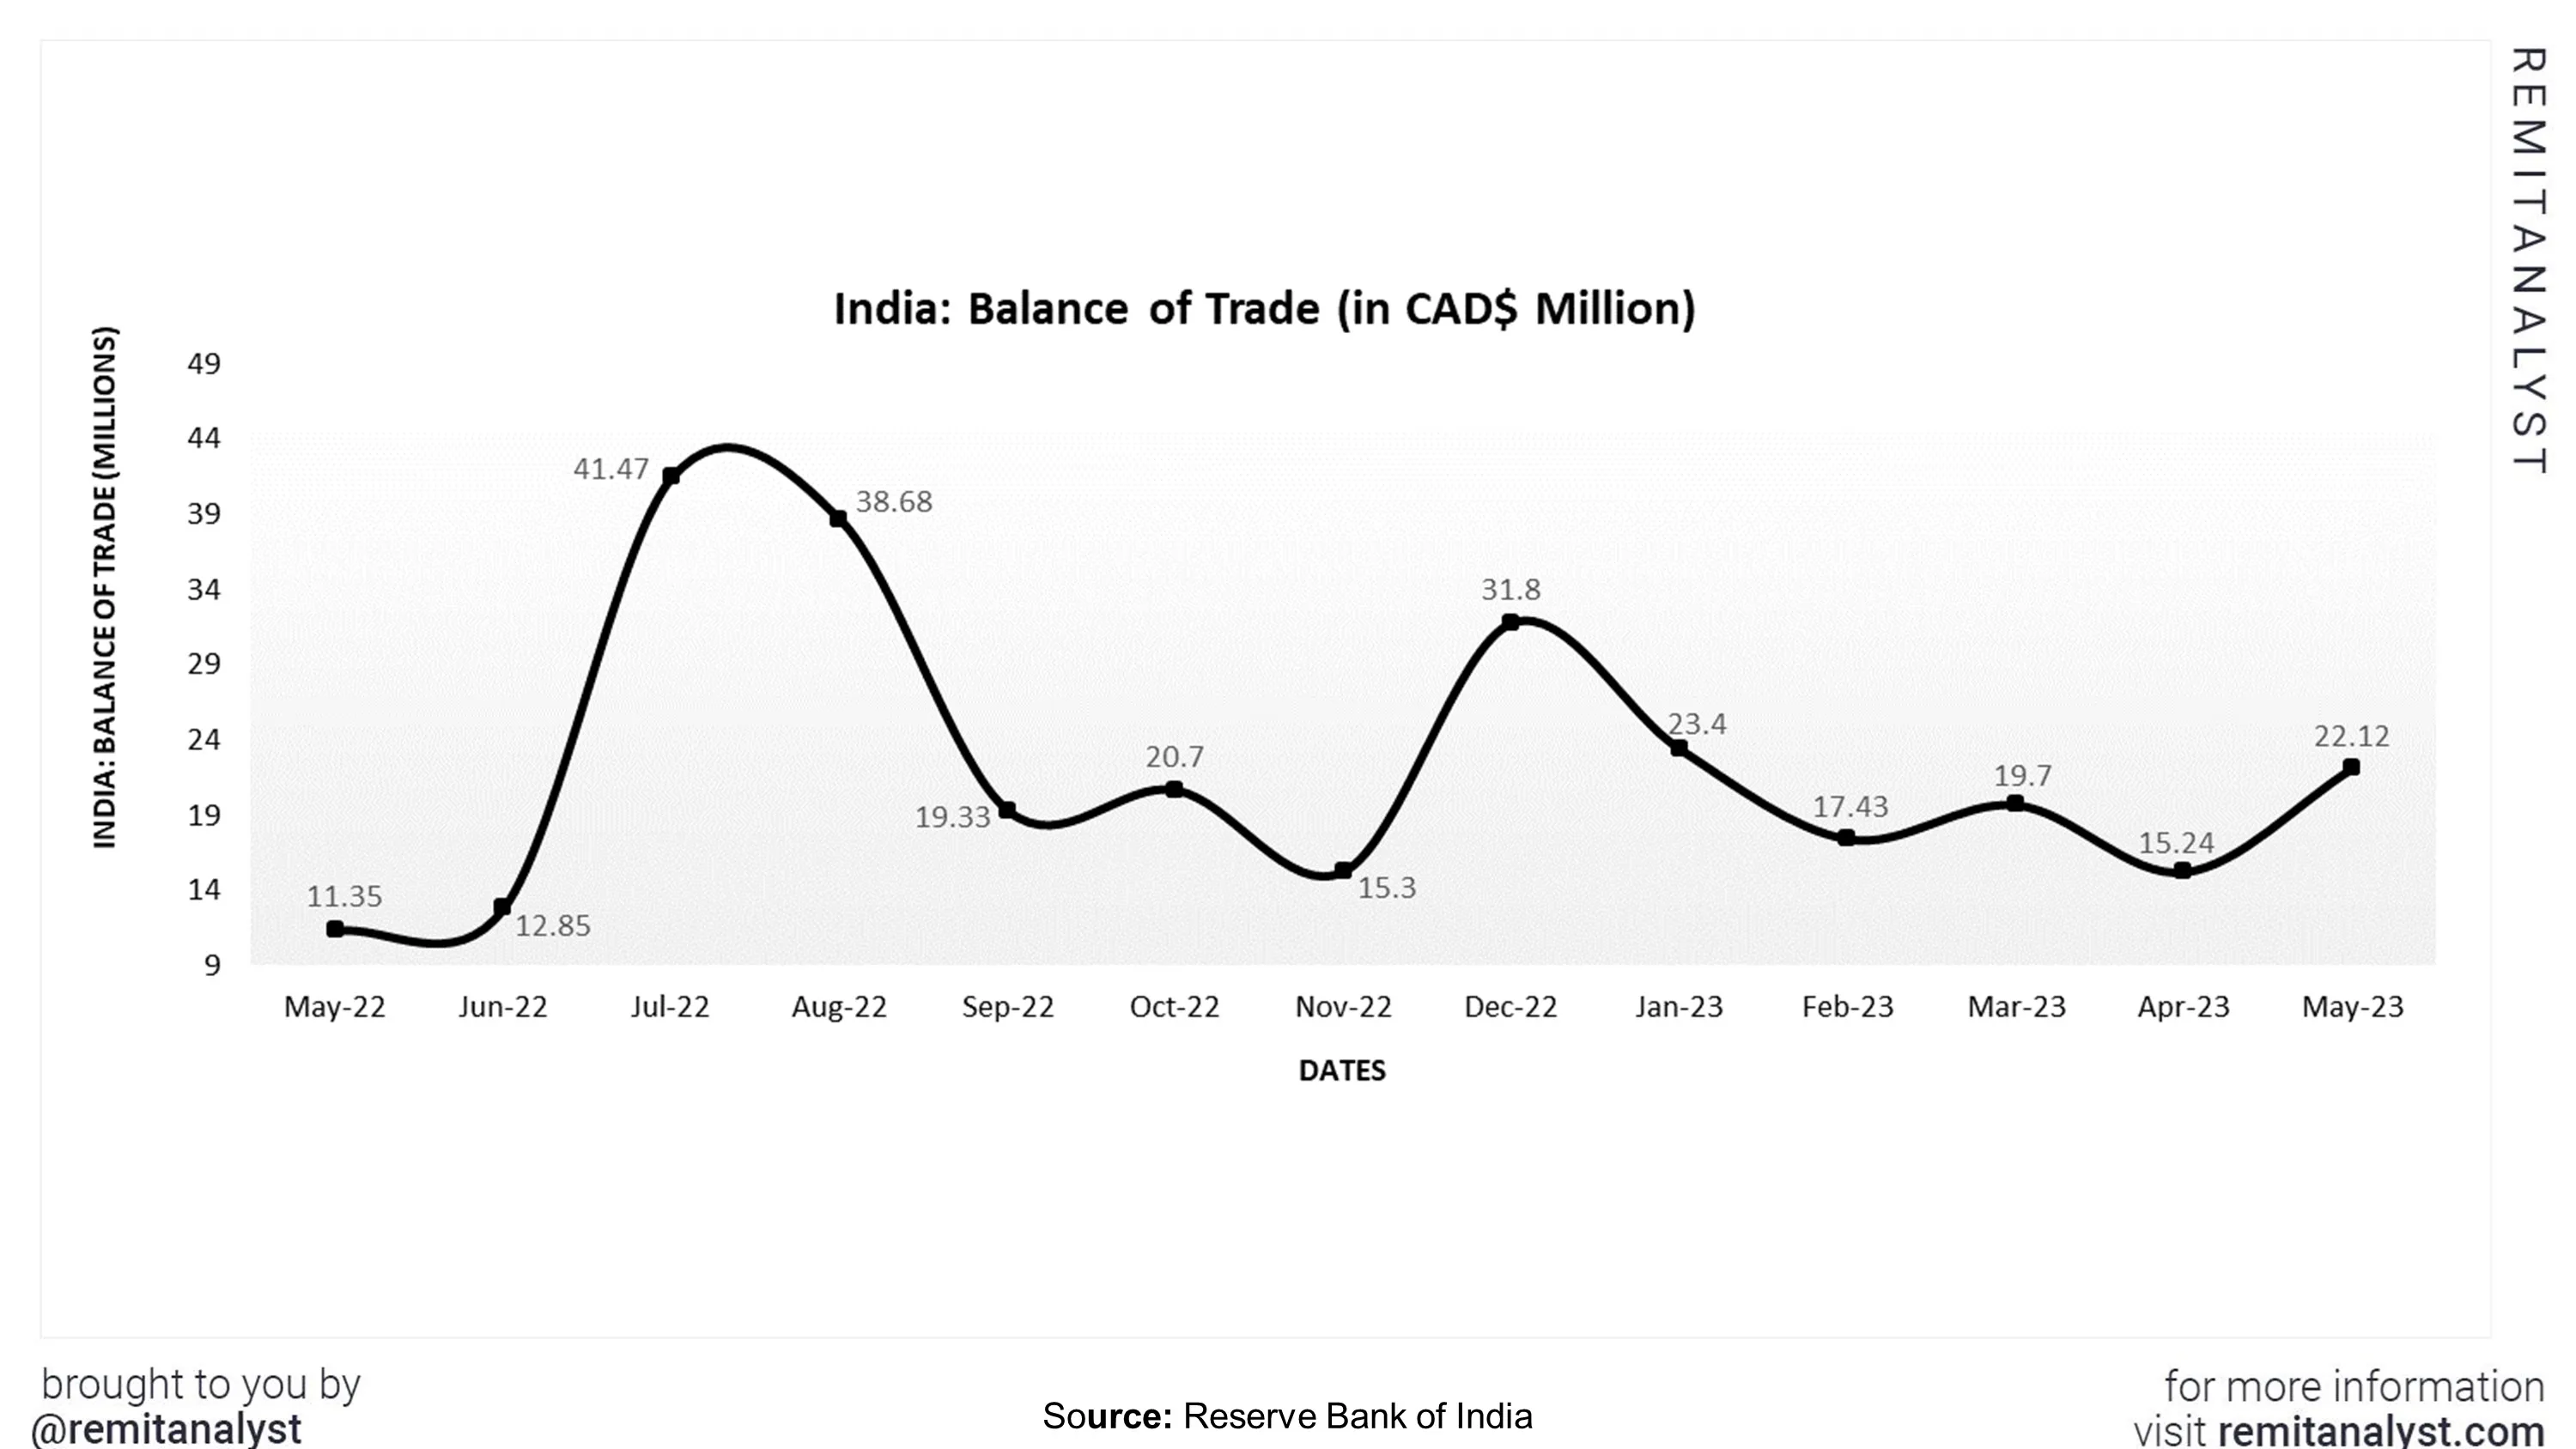 balance-of-trade-india-sep-from-may-2022-to-may-2023